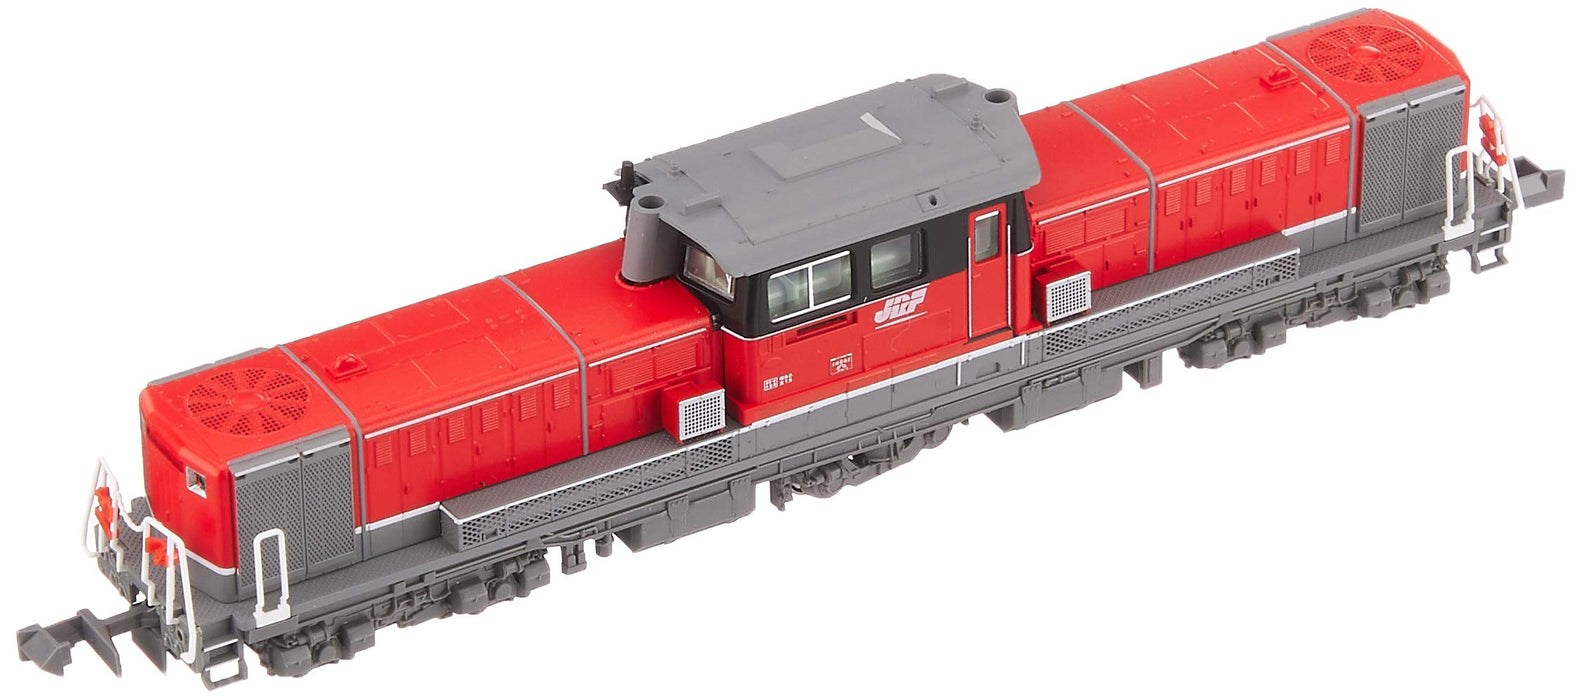 Kato N Gauge DD51 800 Aichi Engine Railway Model JR Freight Color Locomotive 7008-A